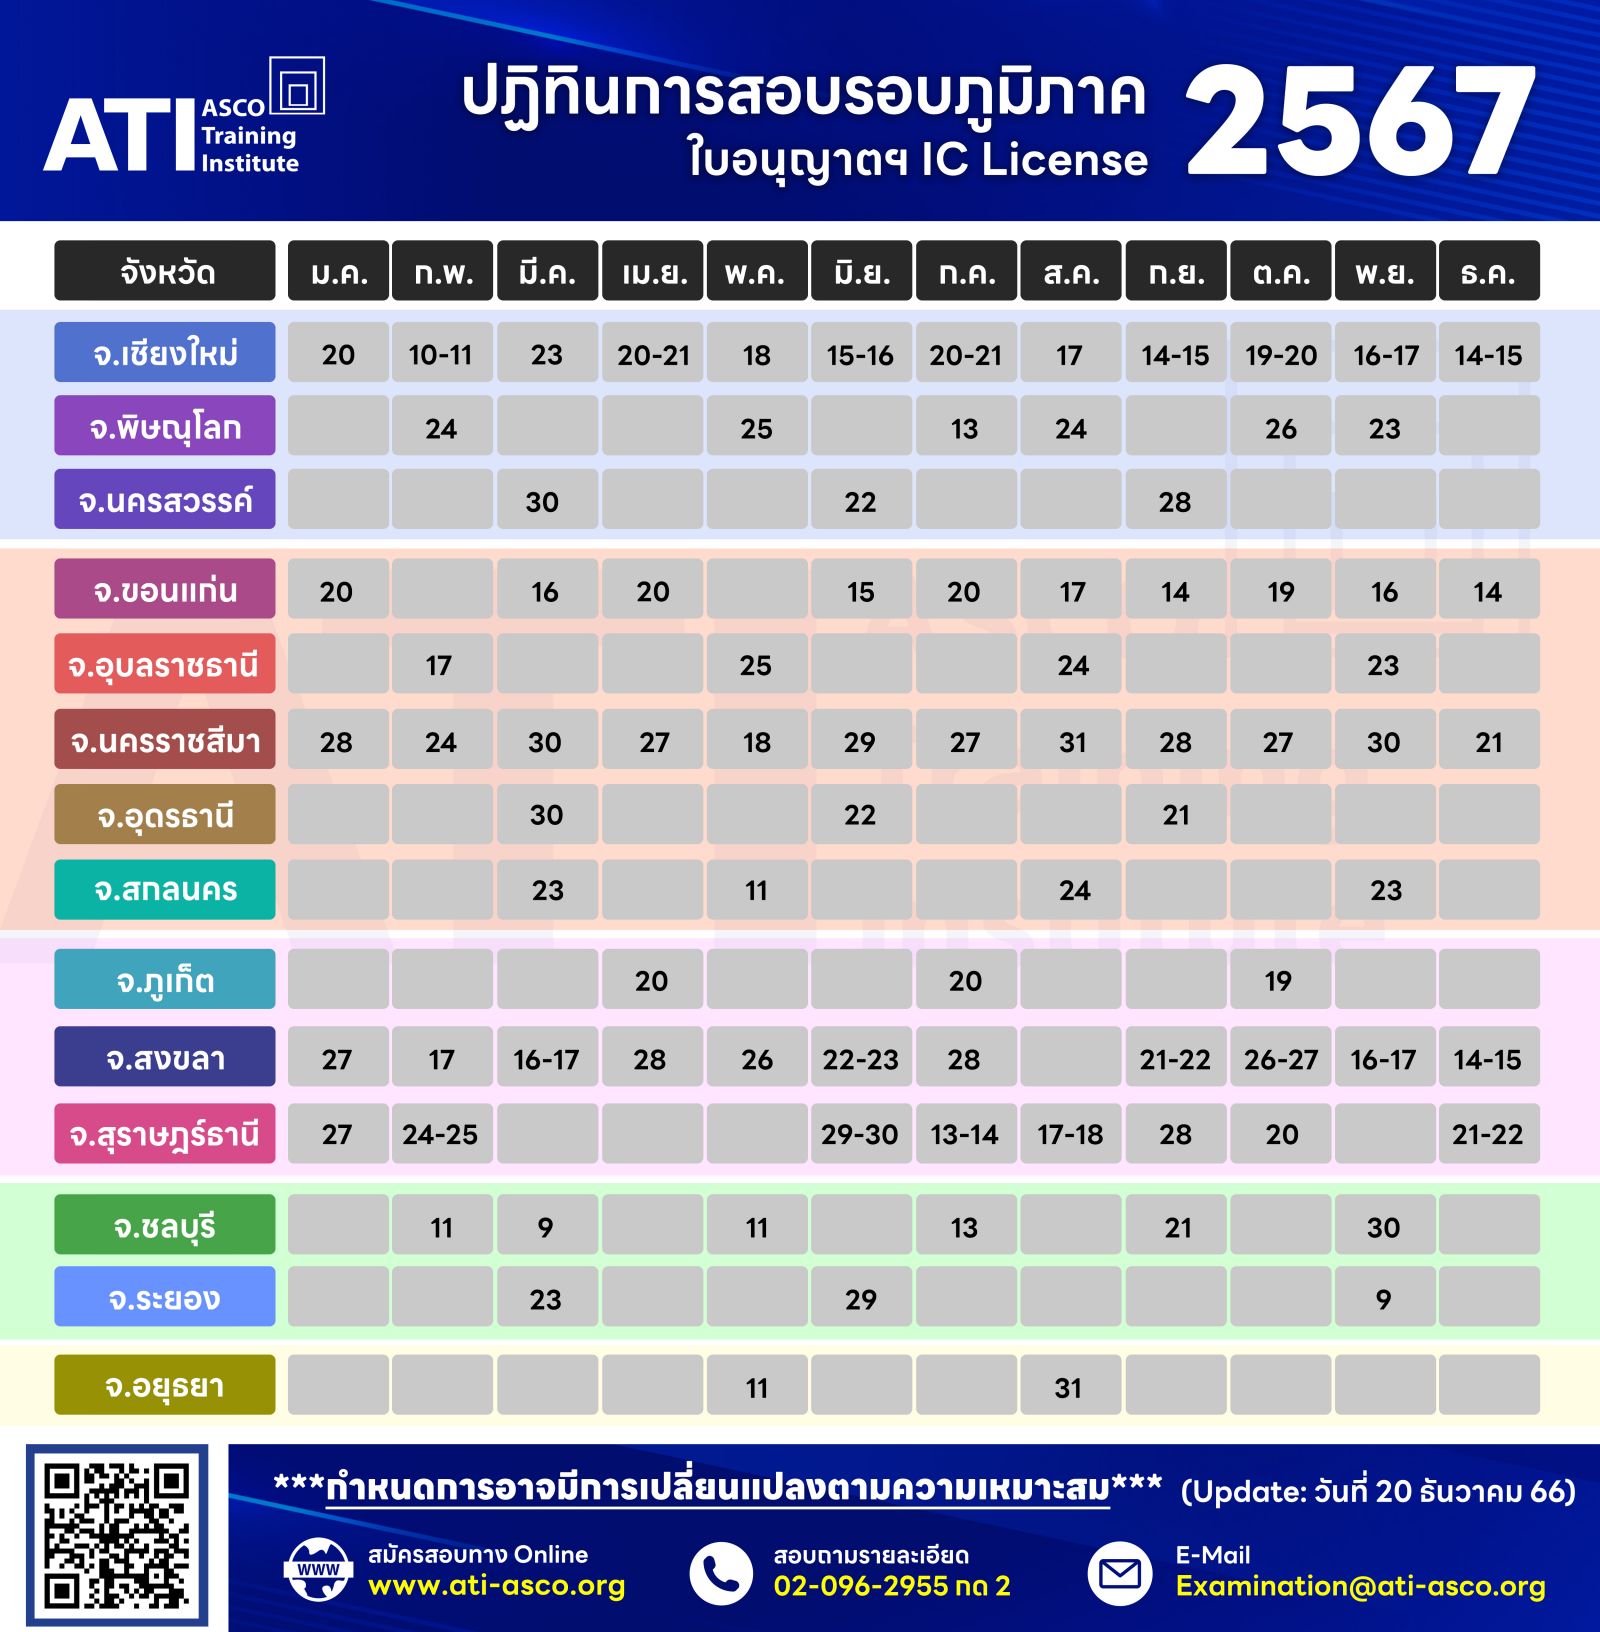 ปฏิทินการสอบ สถาบันฝึกอบรม สมาคมบริษัทหลักทรัพย์ไทย (ATIASCO